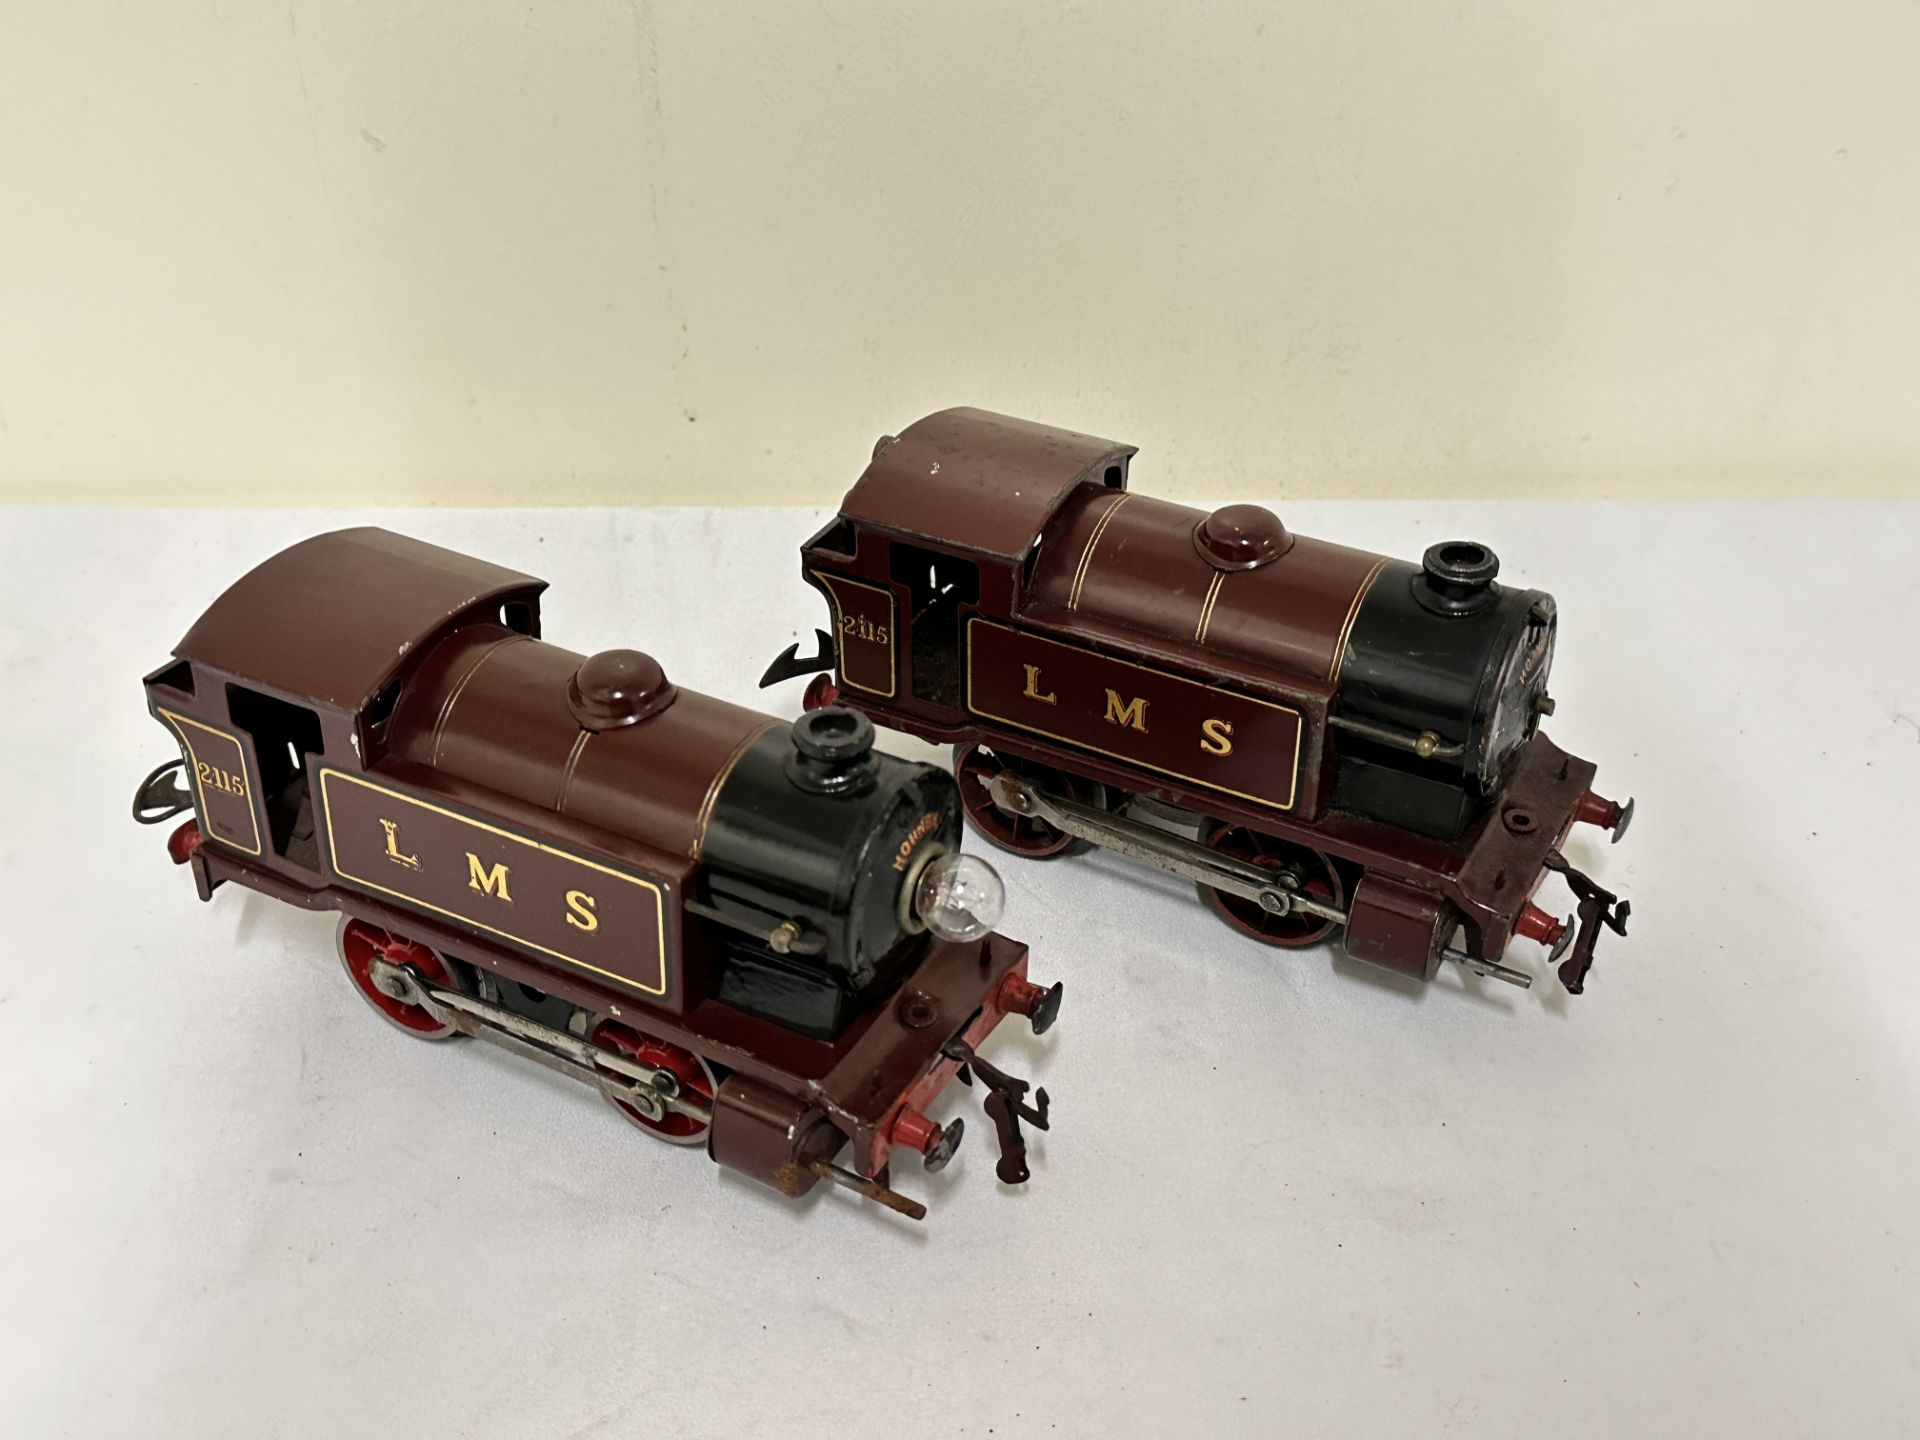 Two Hornby 0 gauge locomotives